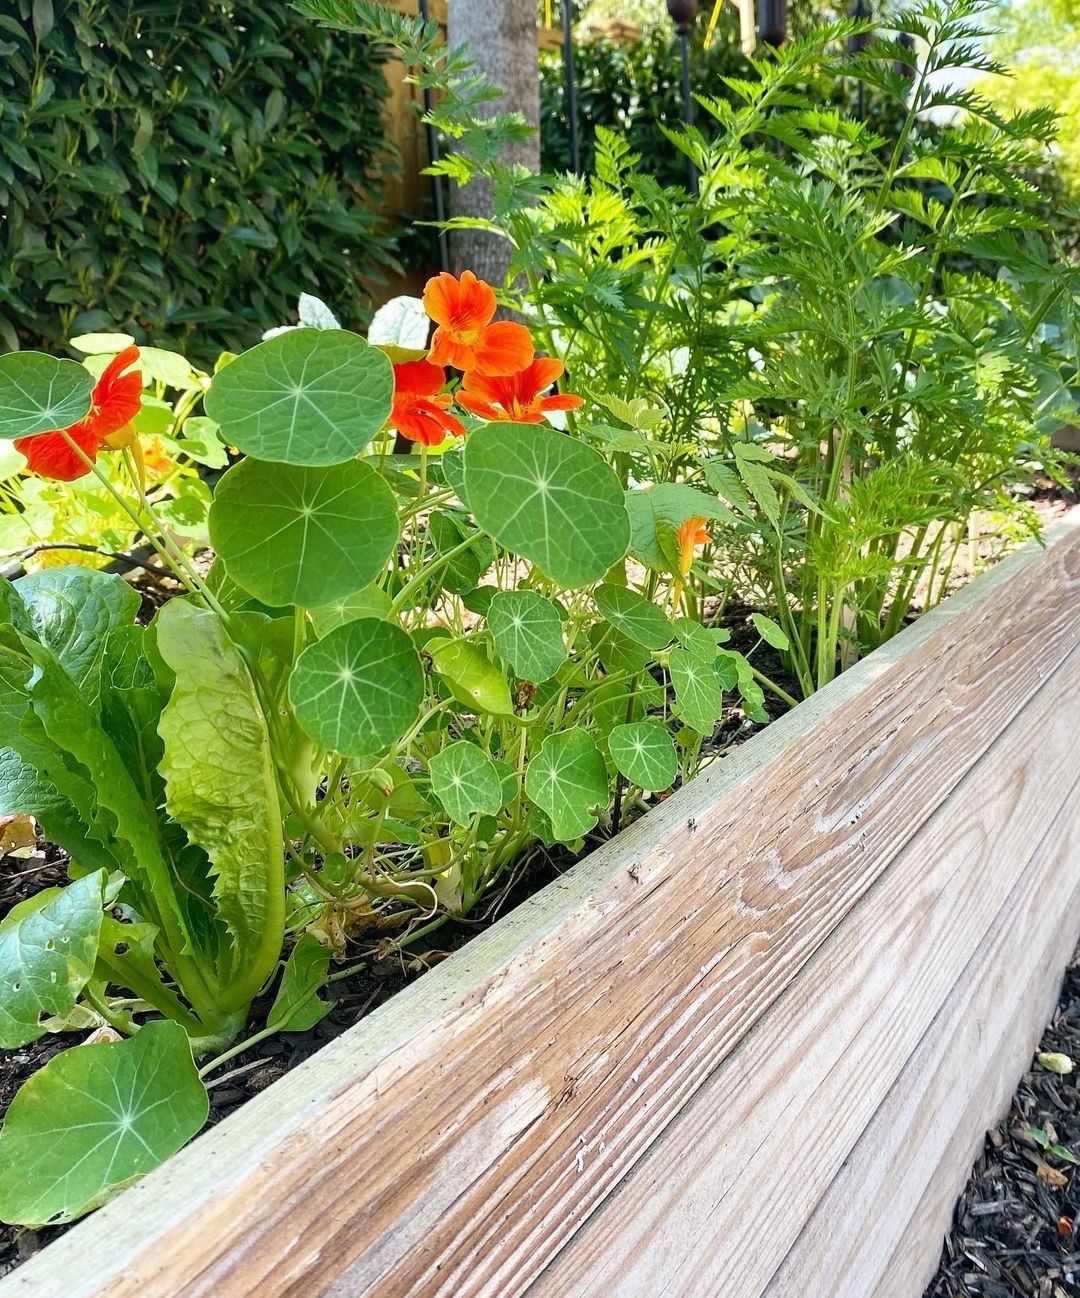 nasturtium, lettuce and carrots in garden bed